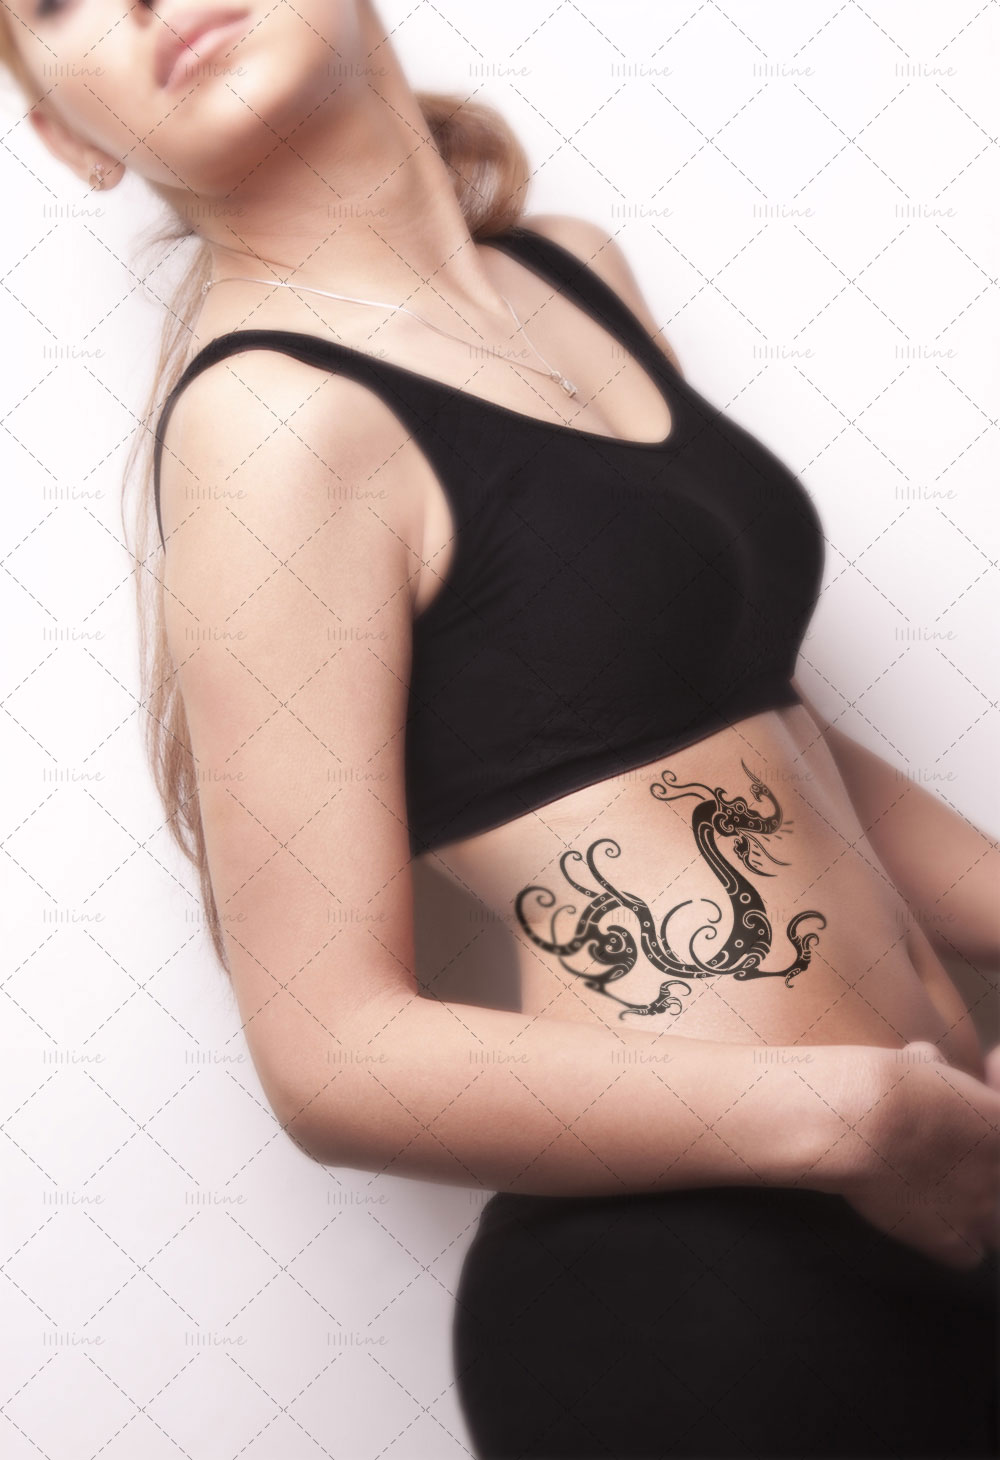 龙中国图腾纹身图案 totem tattoo pattern vi eps pdf